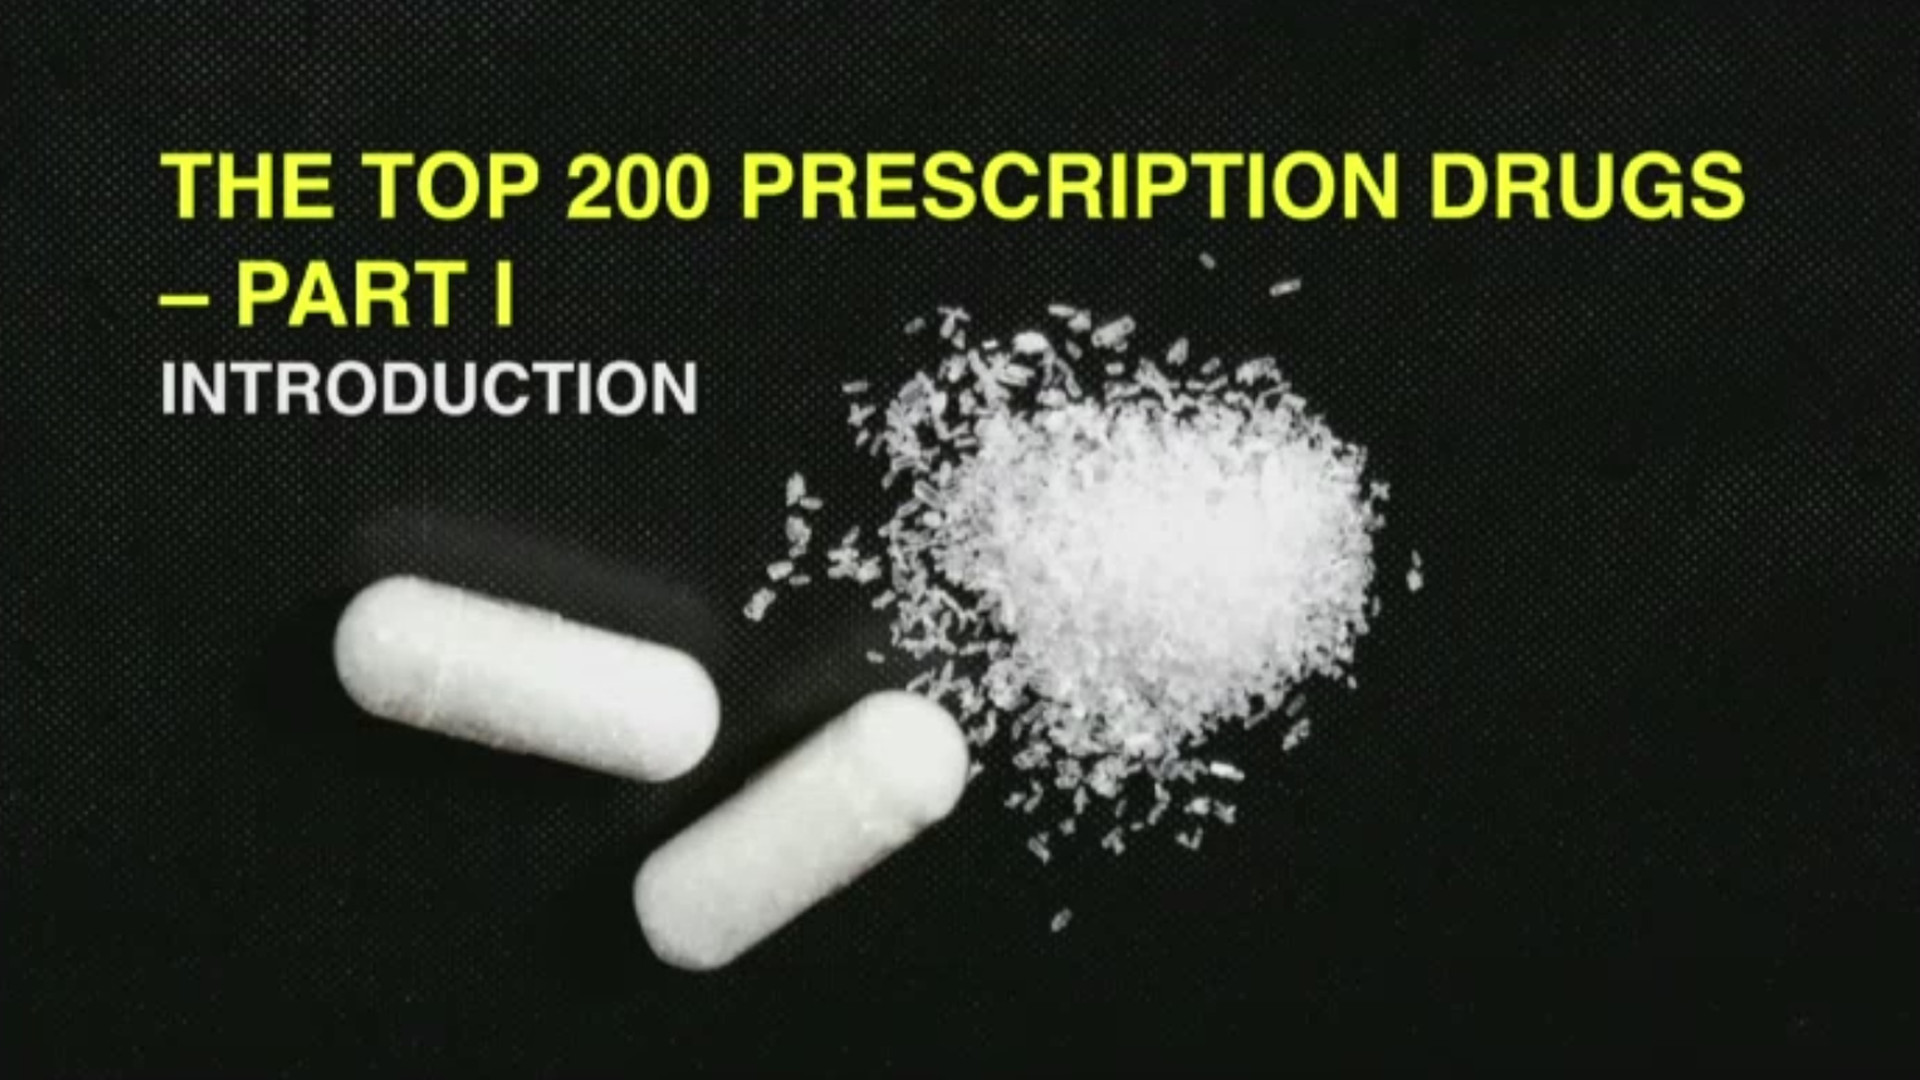 The Top 200 Prescription Drugs Part 1